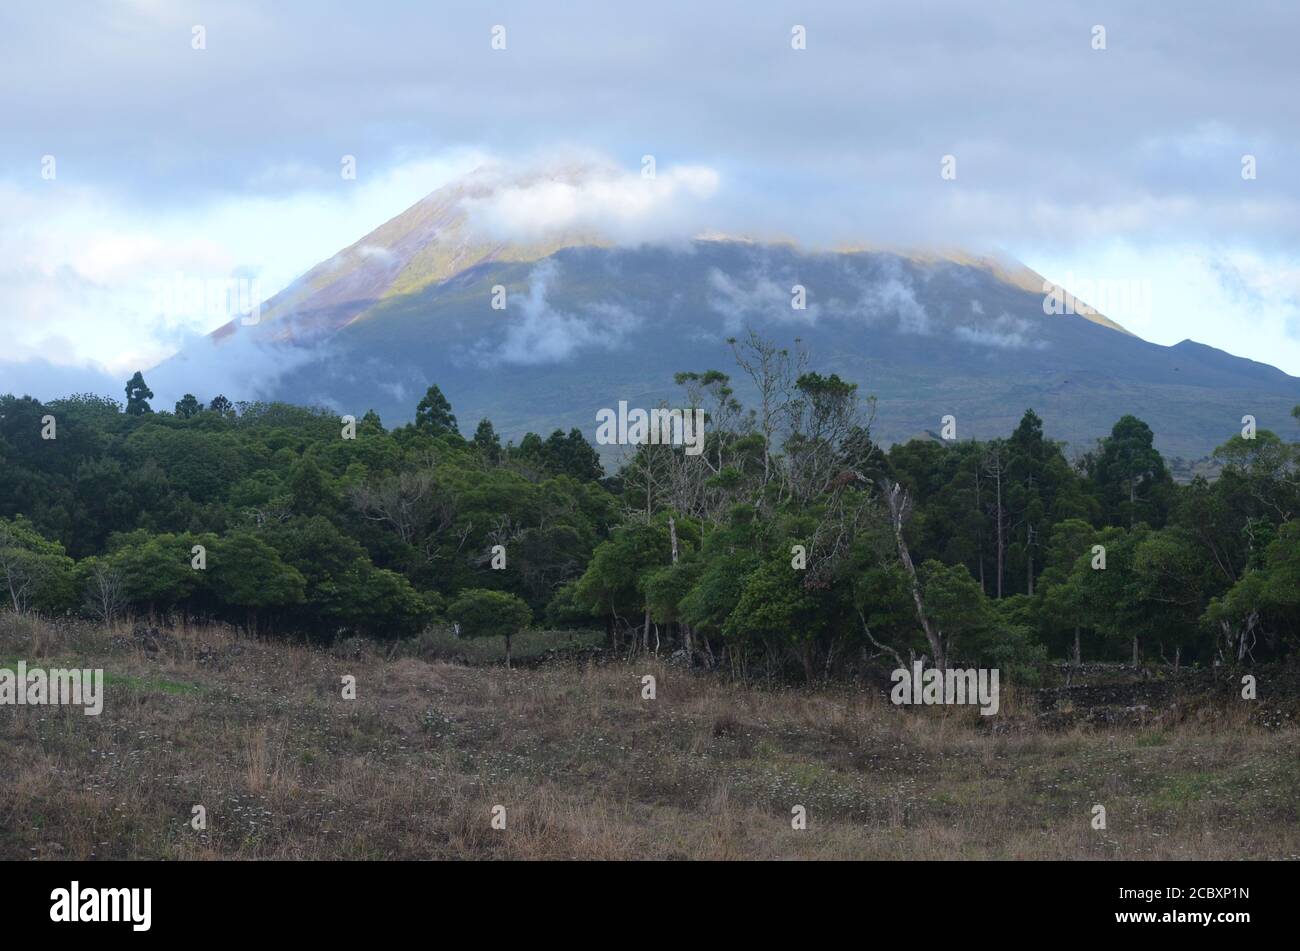 El volcán Pico cónico que se cierne sobre su isla homónima, archipiélago de las Azores, Portugal Foto de stock